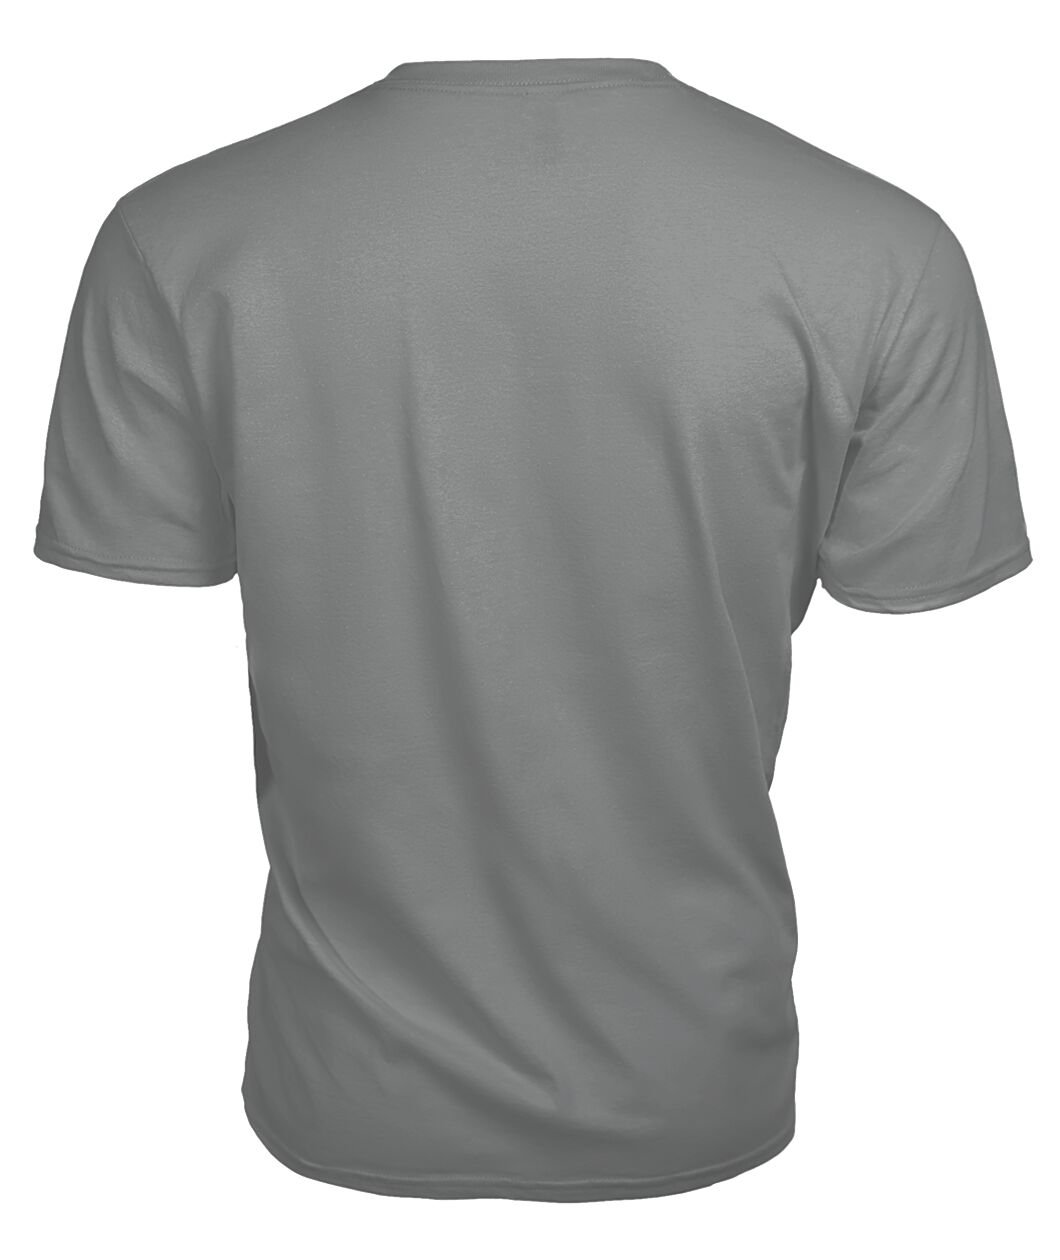 Innes Family Tartan - 2D T-shirt